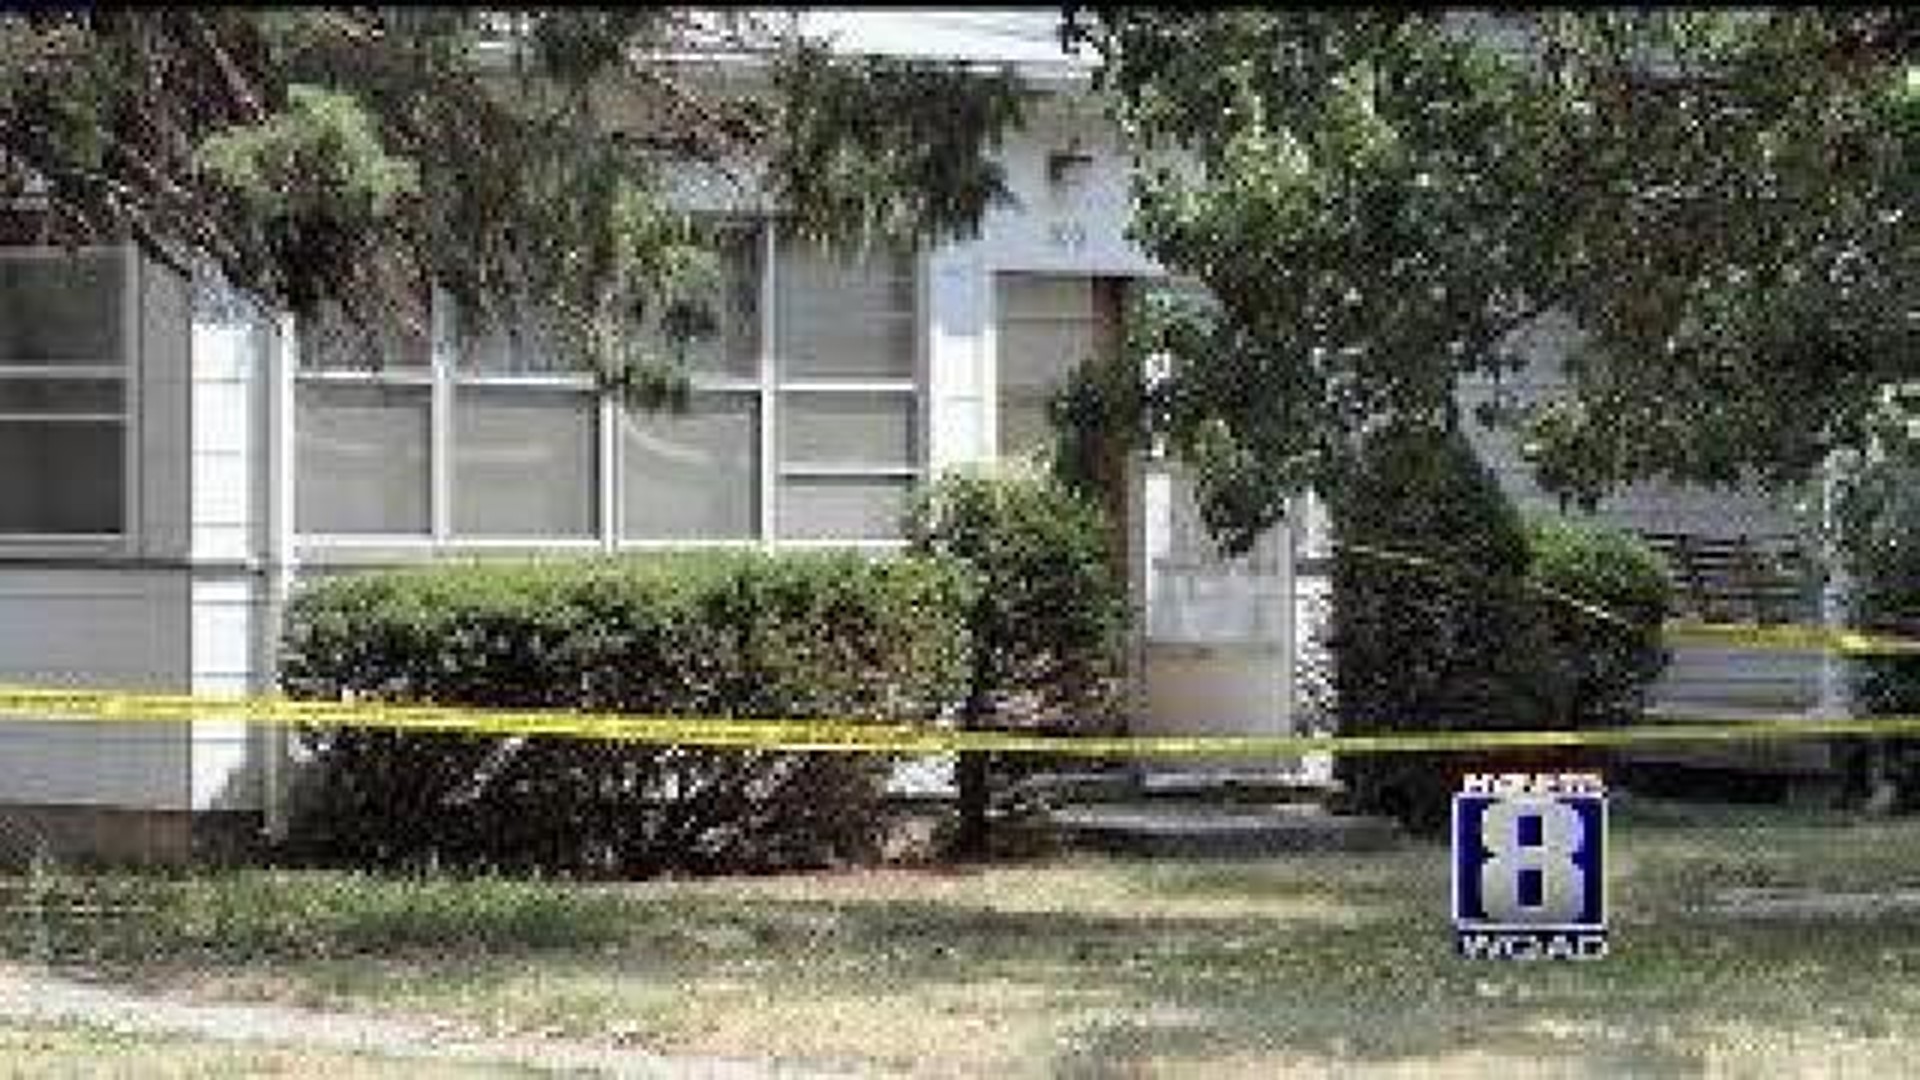 Body found in Burlington home